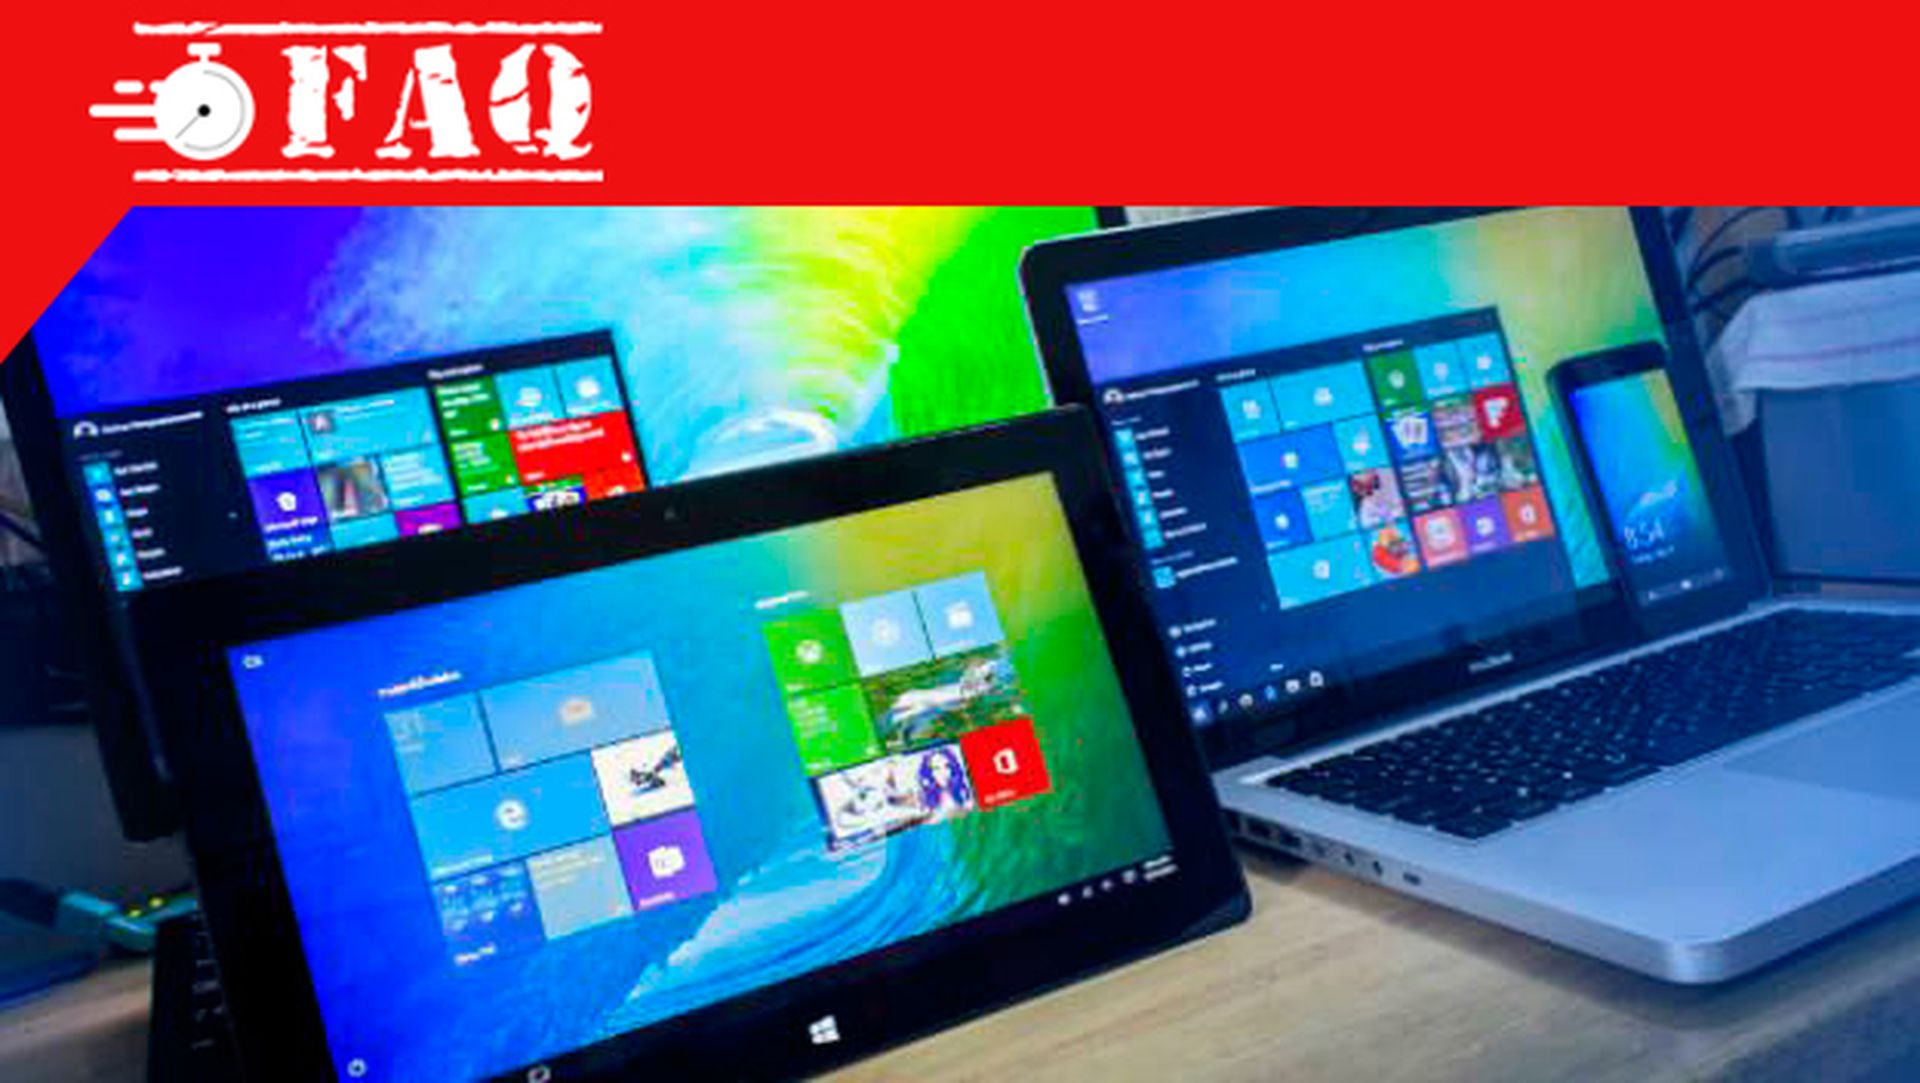 Windows 10 Cambiar Entre Modo Tablet Y Escritorio 8126